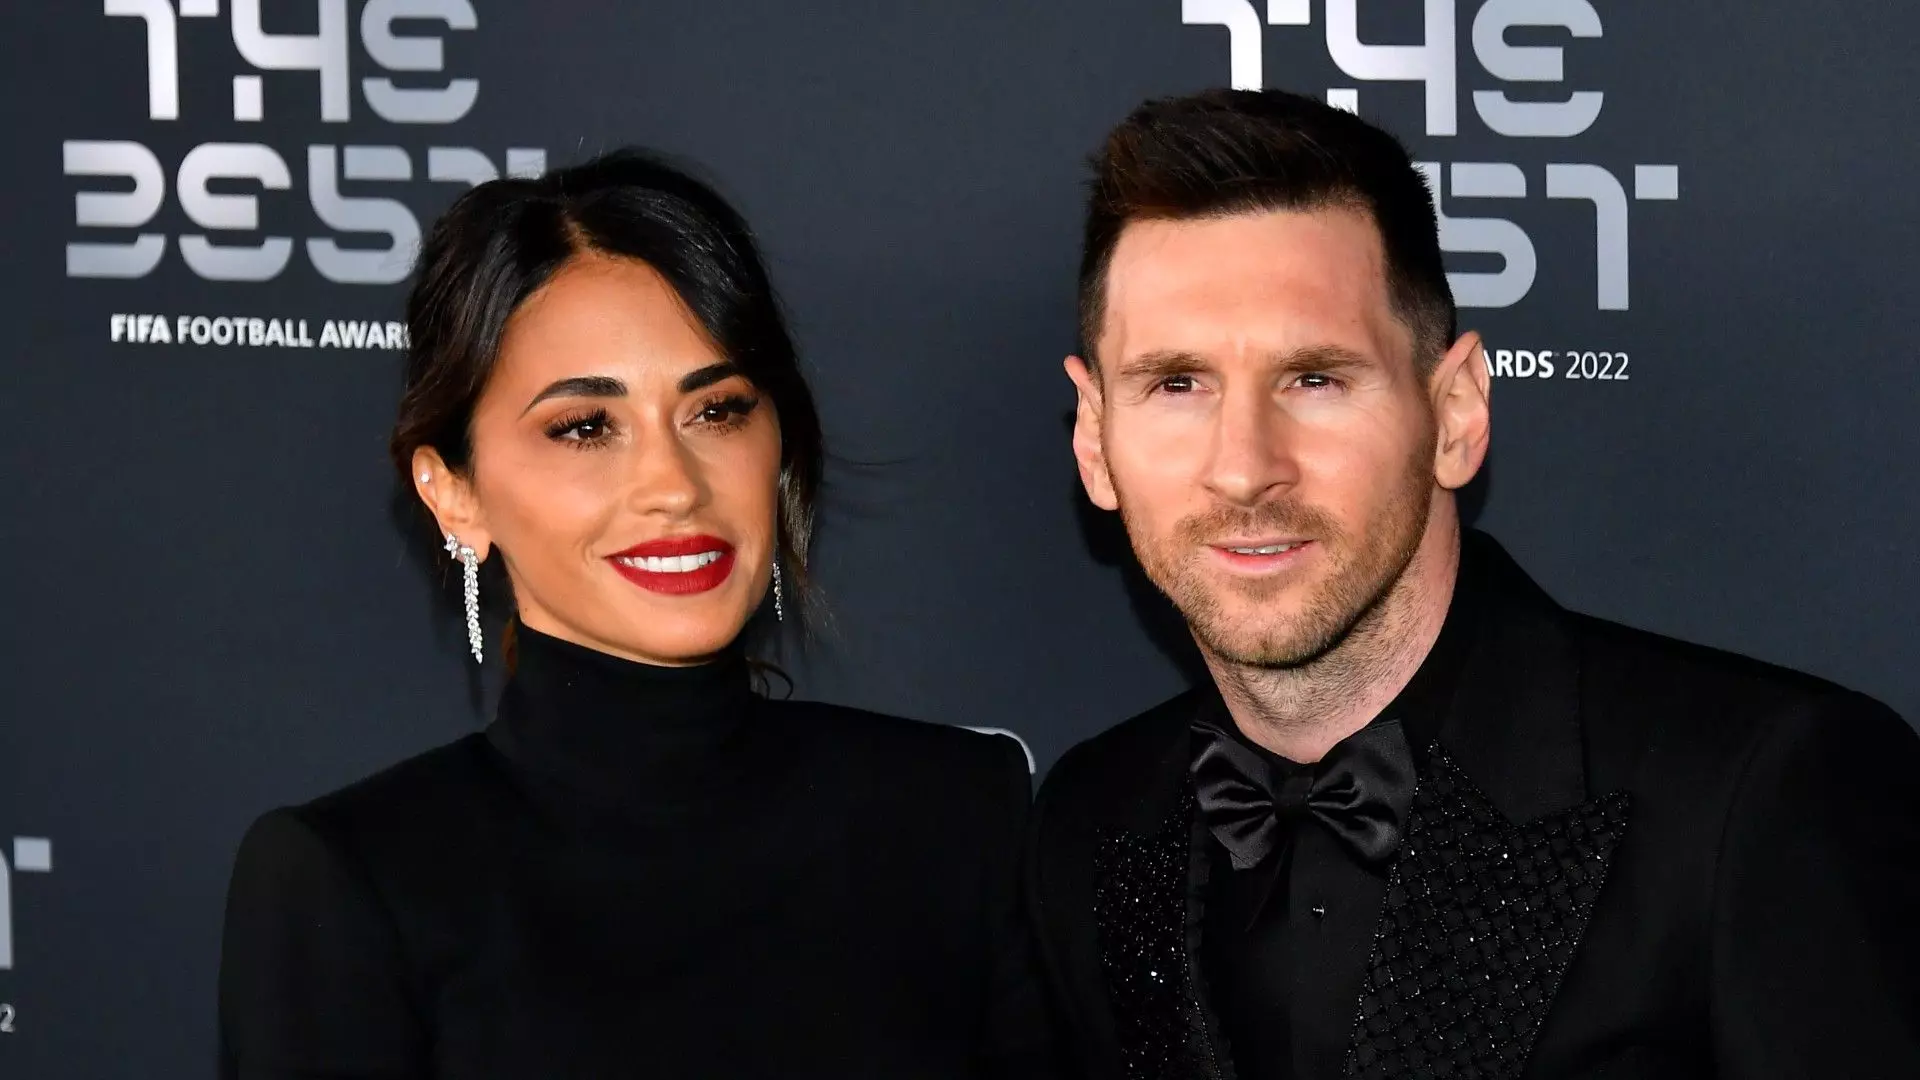 Leo Messi, si attende anche il sì della moglie per il futuro